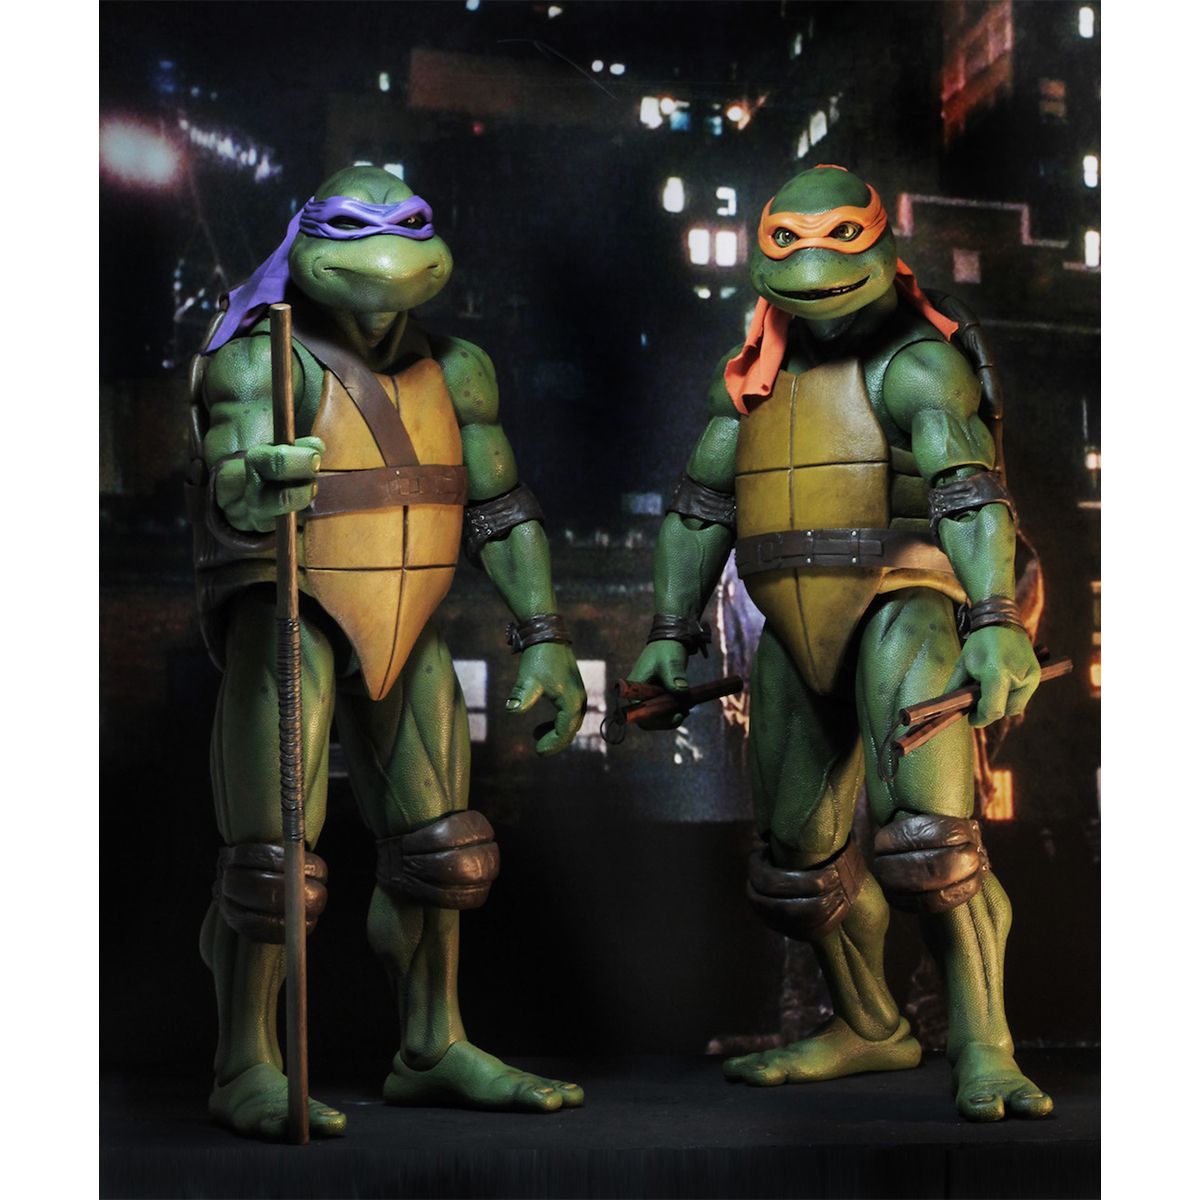 اکشن فیگور نکا مدل لاکپشت های نینجا طرح Turtle Ninja مجموعه 4 عددی -  - 9